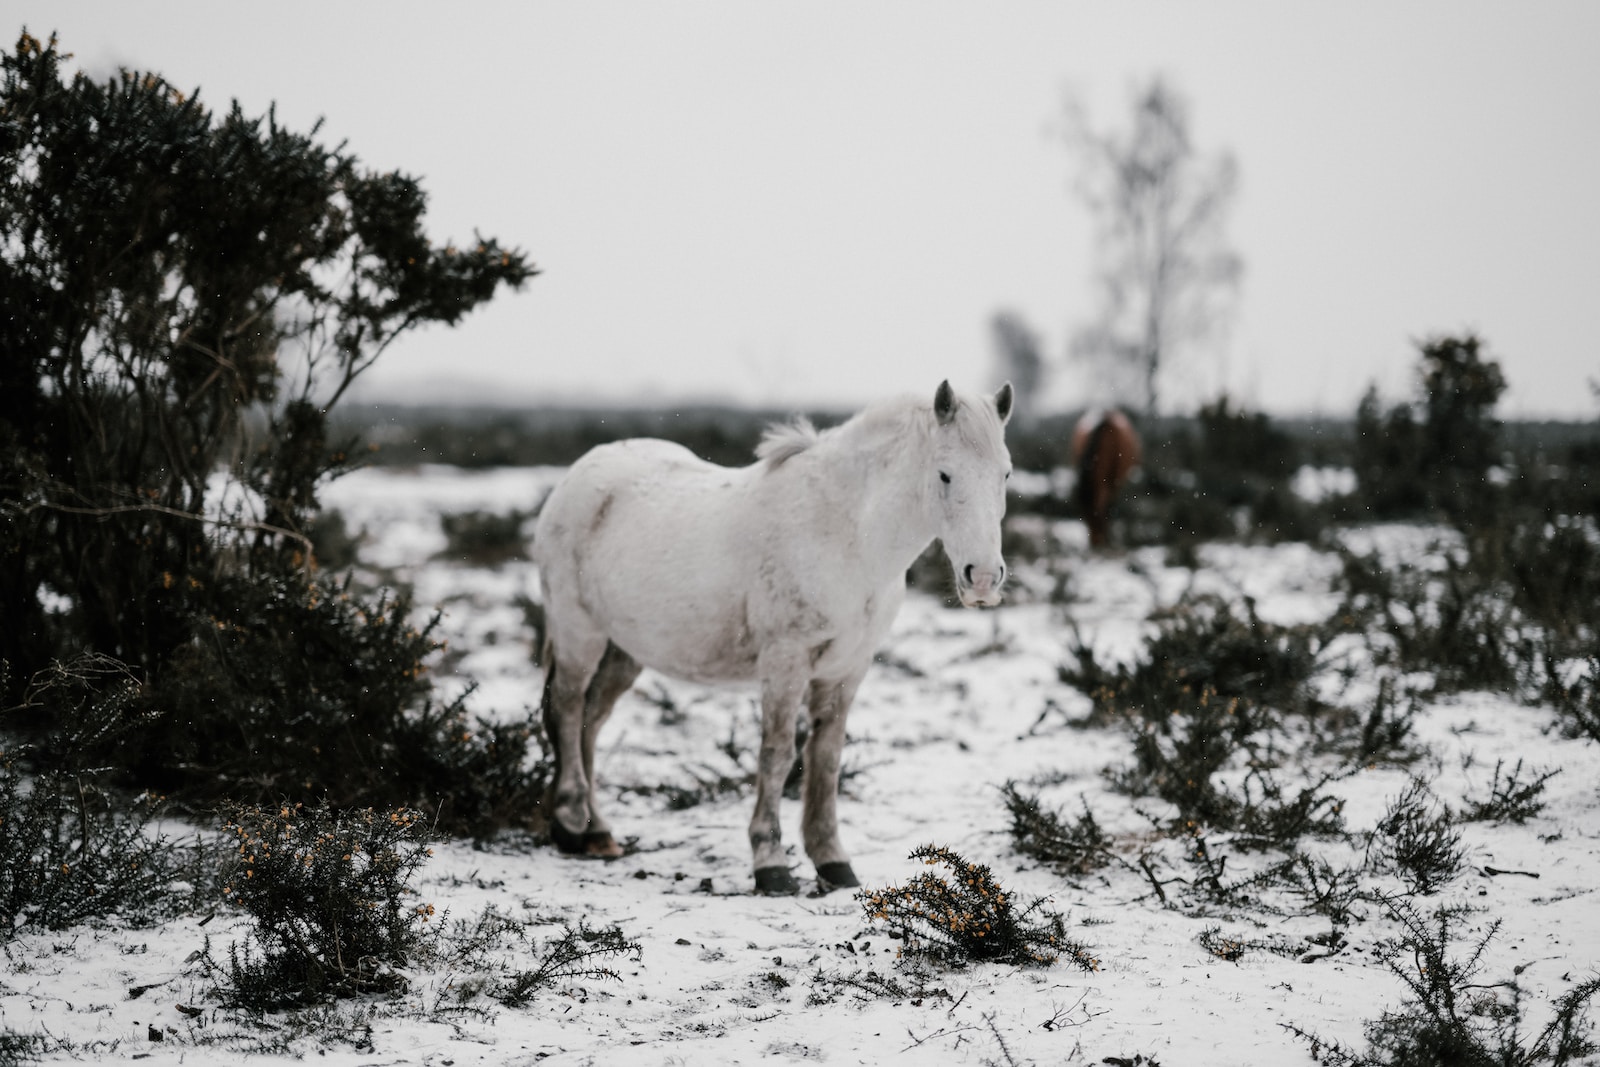 Wie man Pferde auf die kalte Jahreszeit vorbereitet: Tipps und Tricks